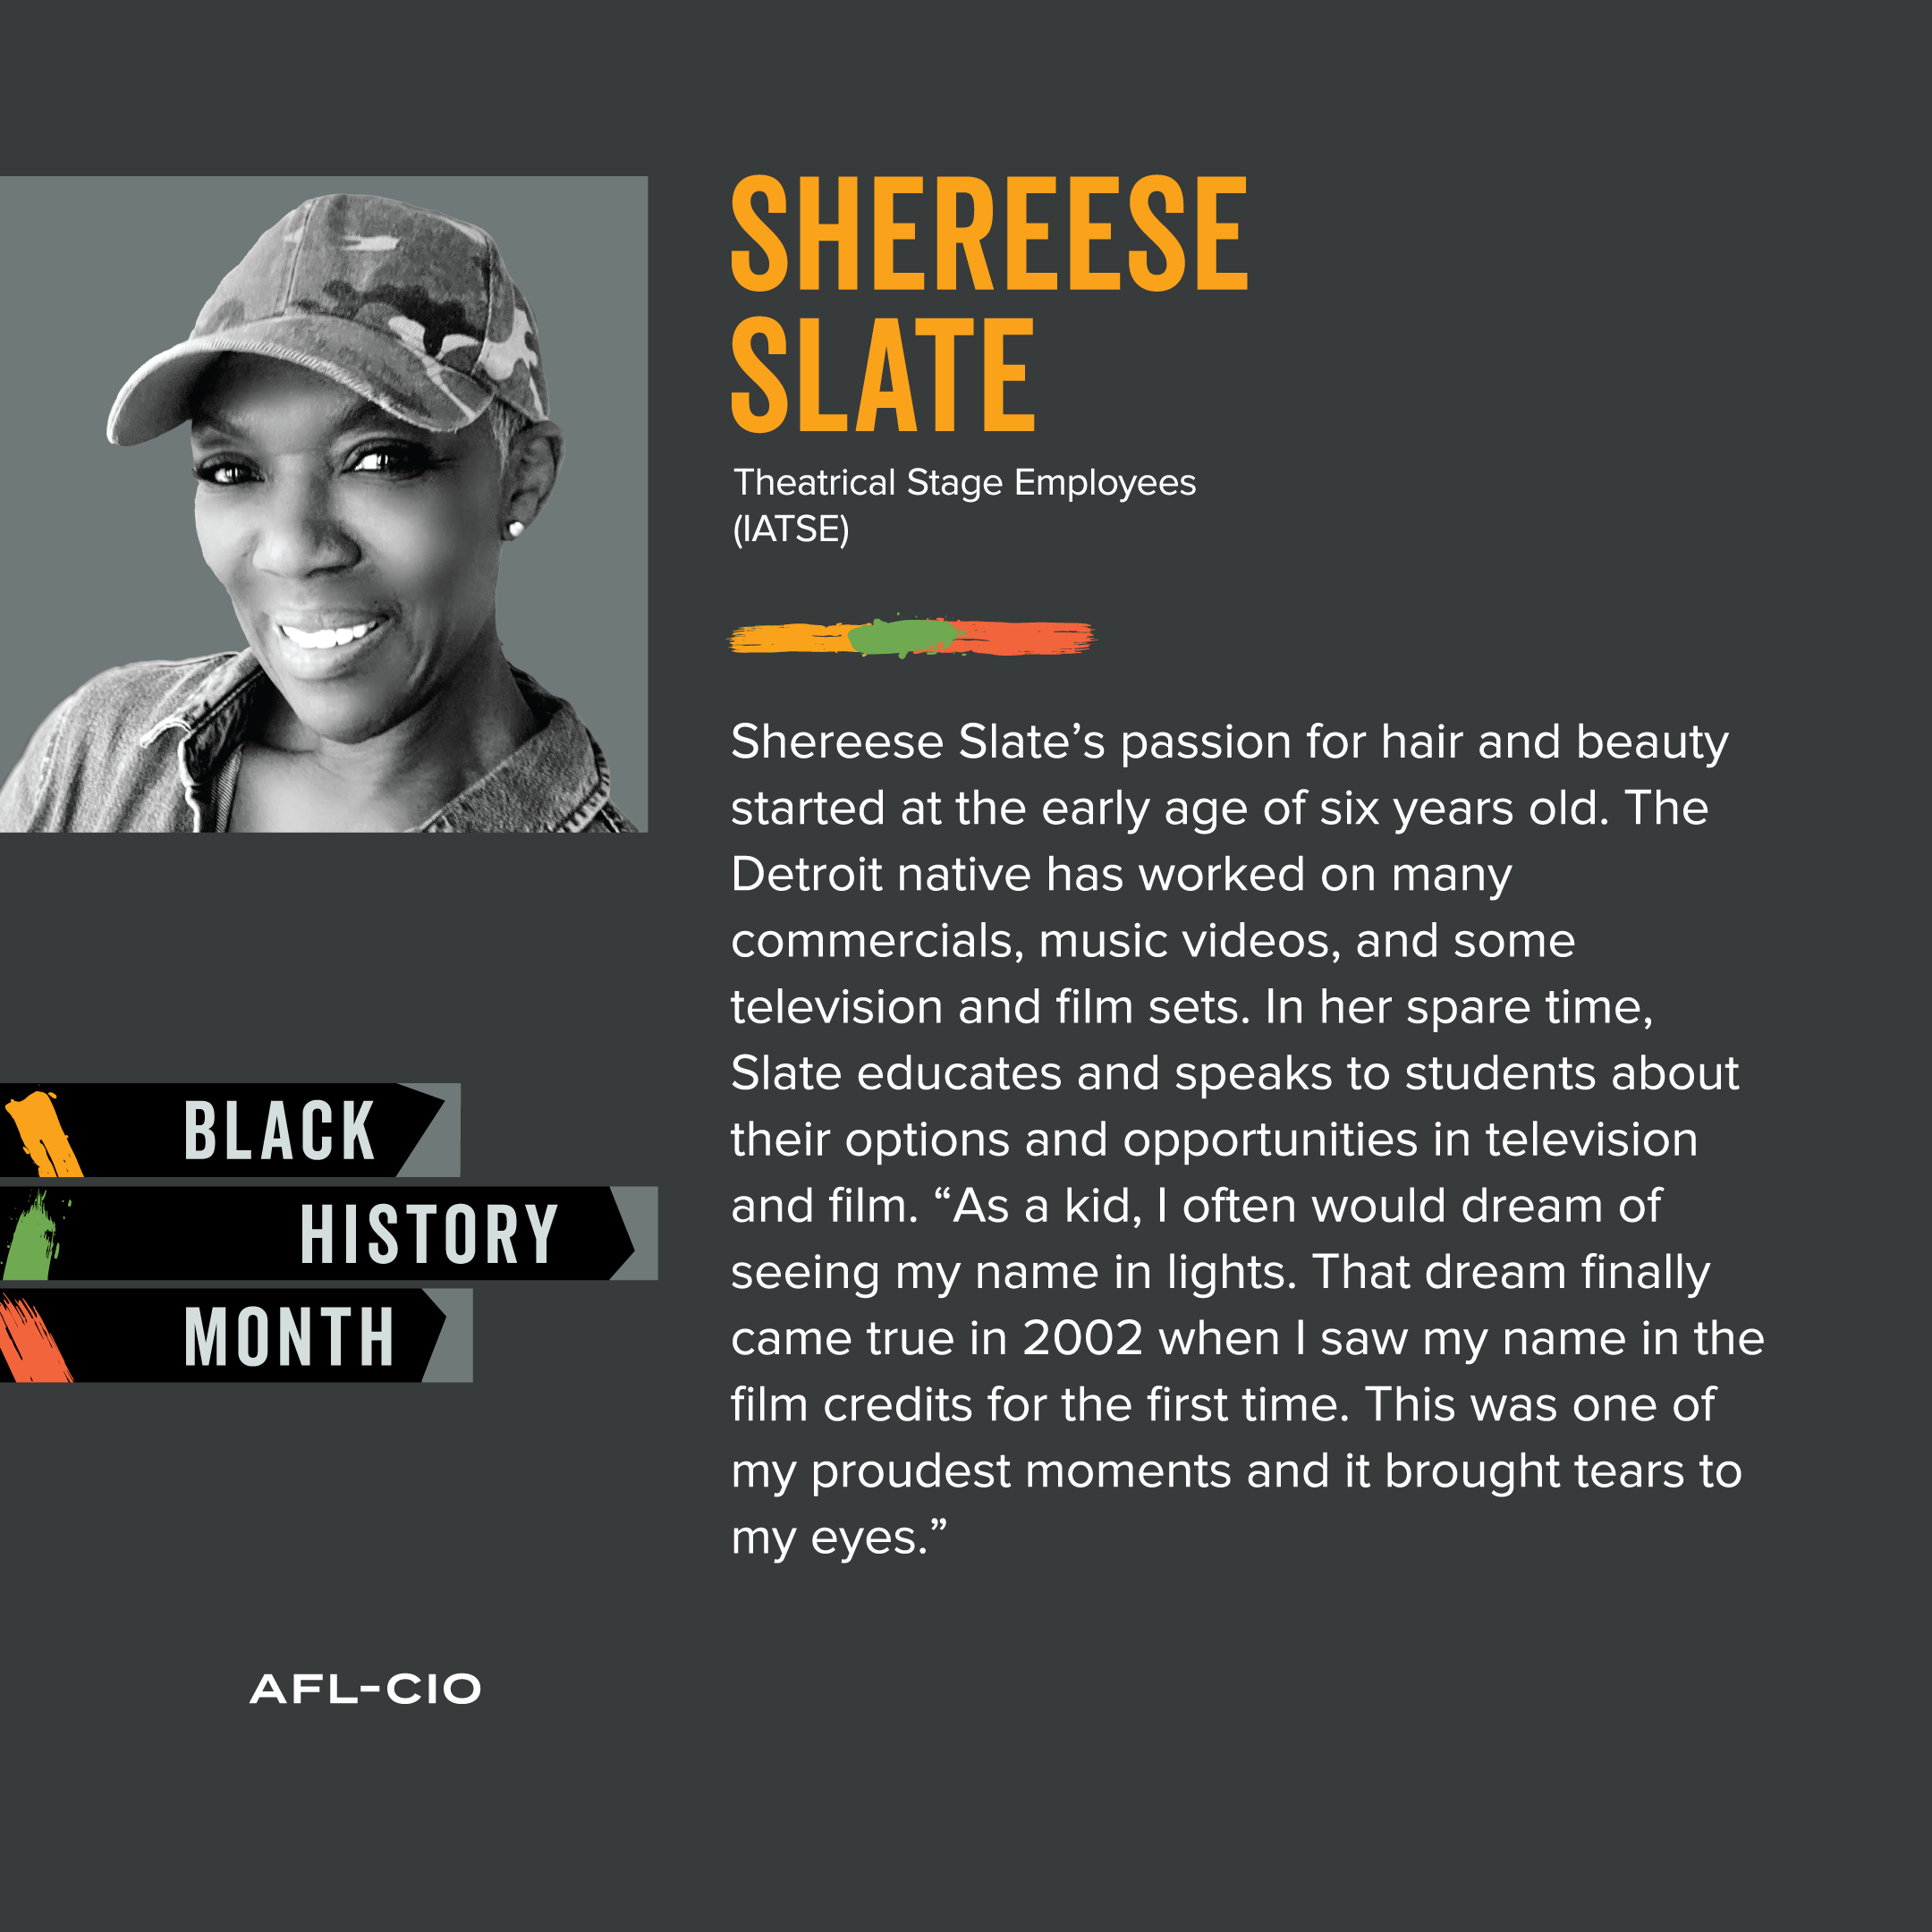 Shereese Slate